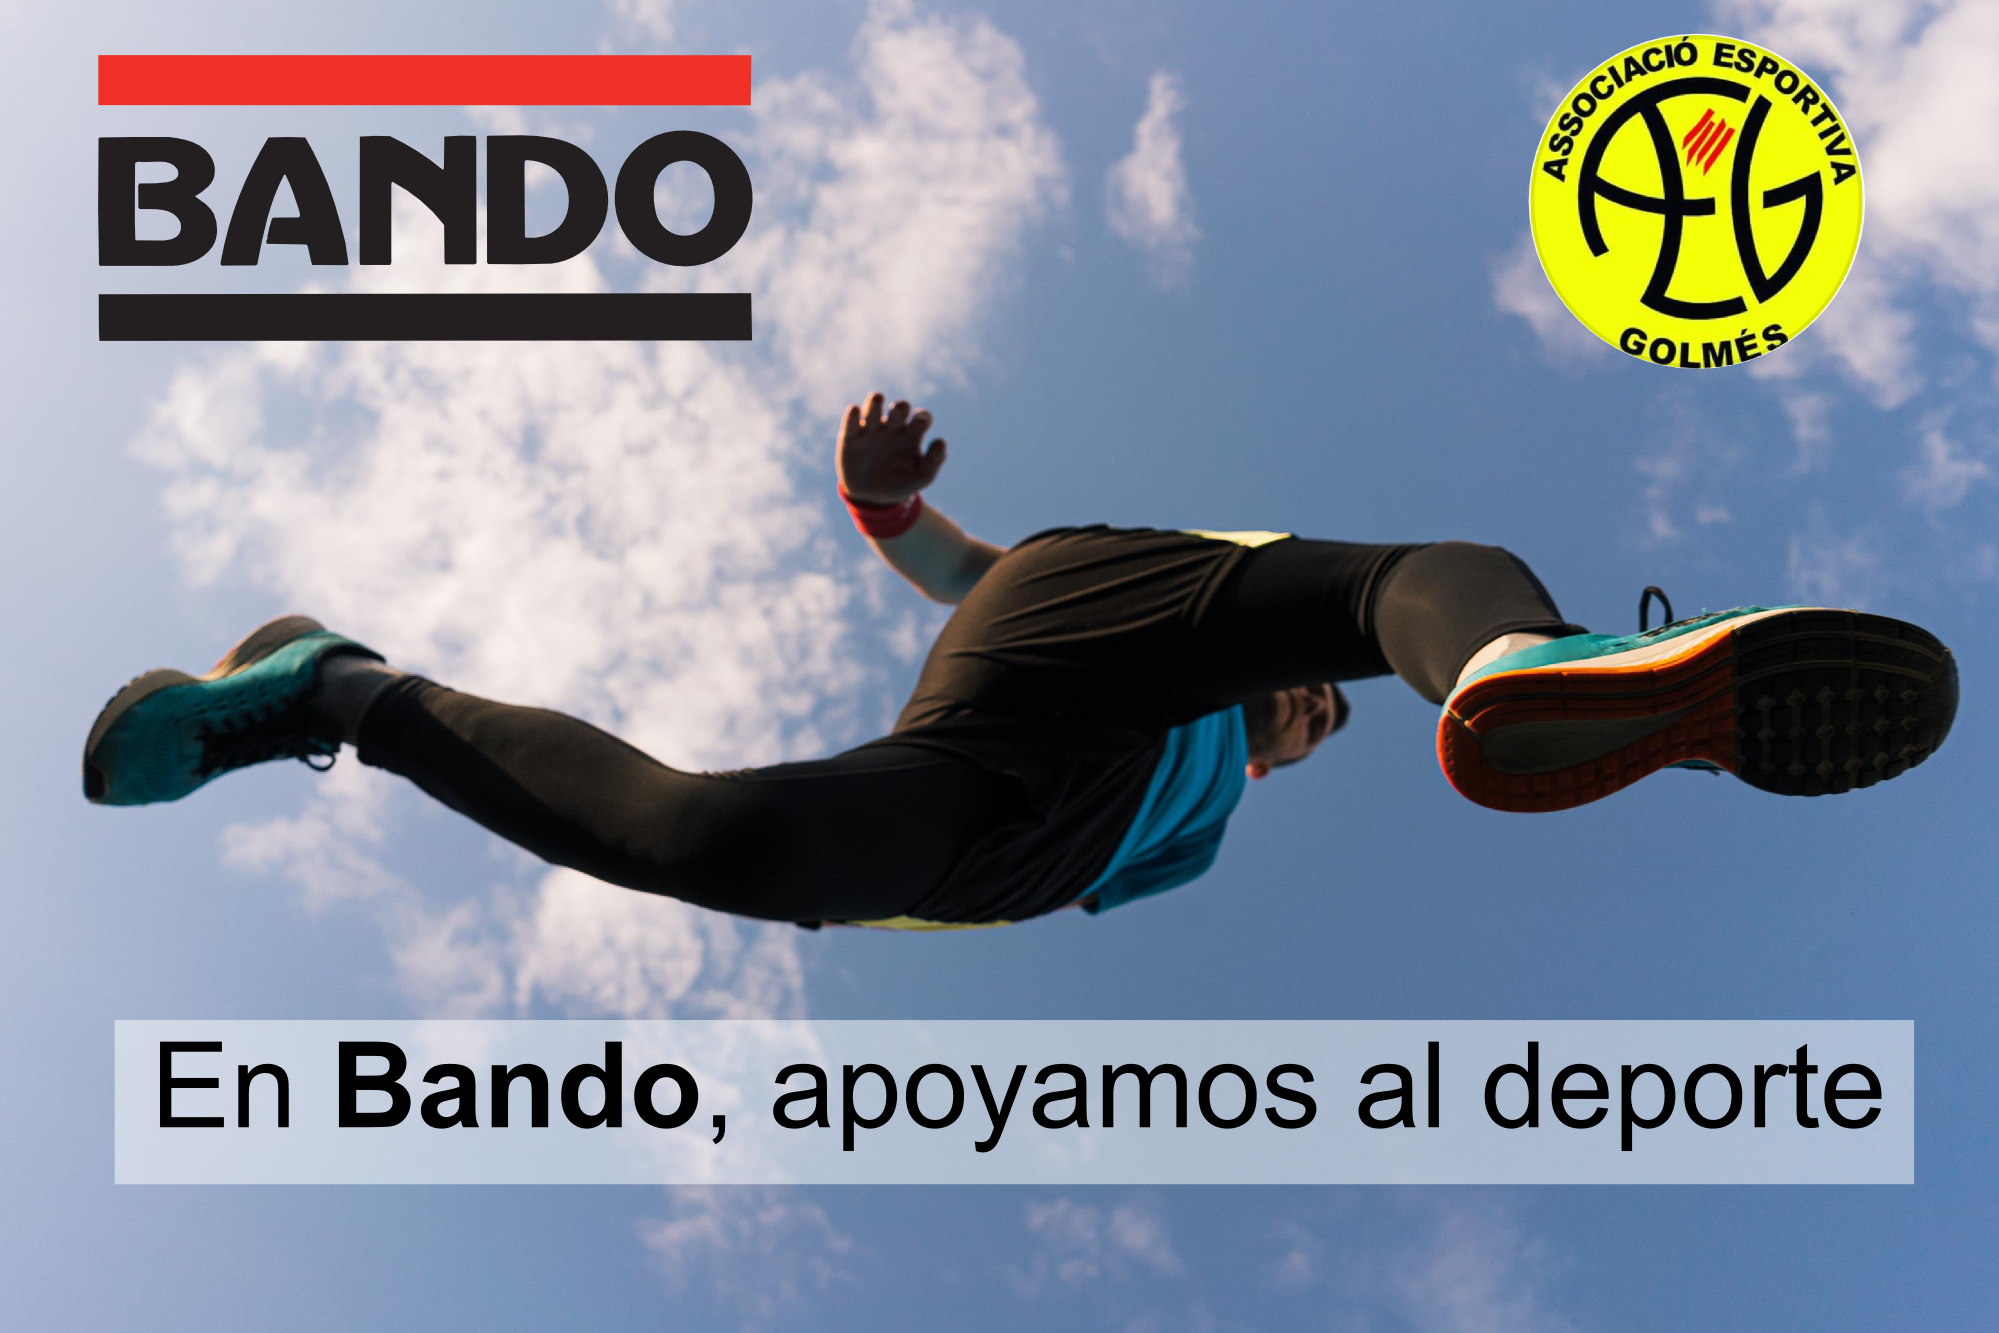 Featured image for “Bando Ibérica apoya al deporte”